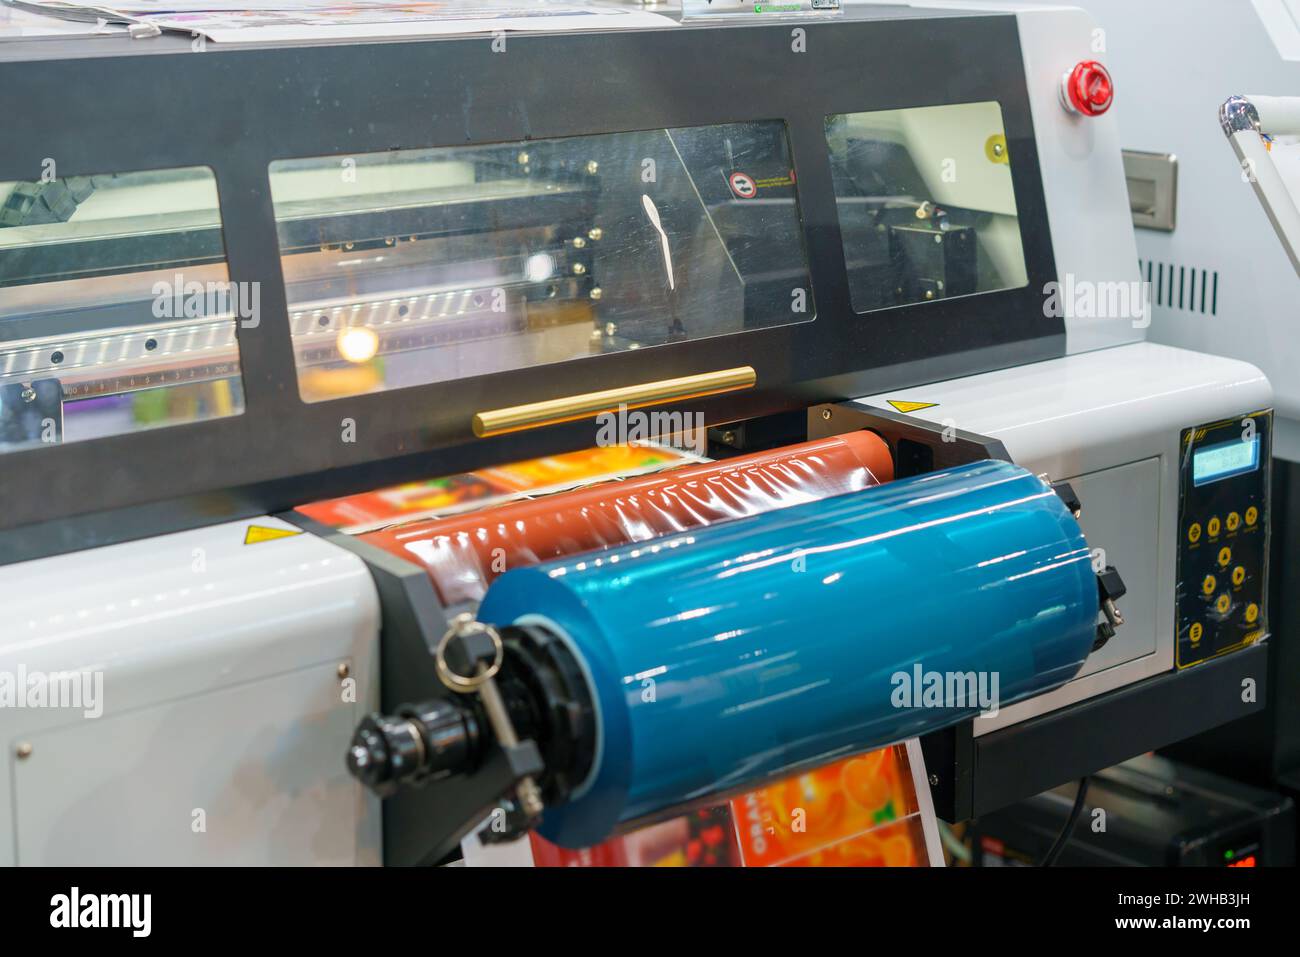 Hochauflösendes Bild, das den industriellen Druckprozess von Klebeetiketten zeigt und die Maschinen und Etikettenbögen in leuchtendem Rot zeigt Stockfoto